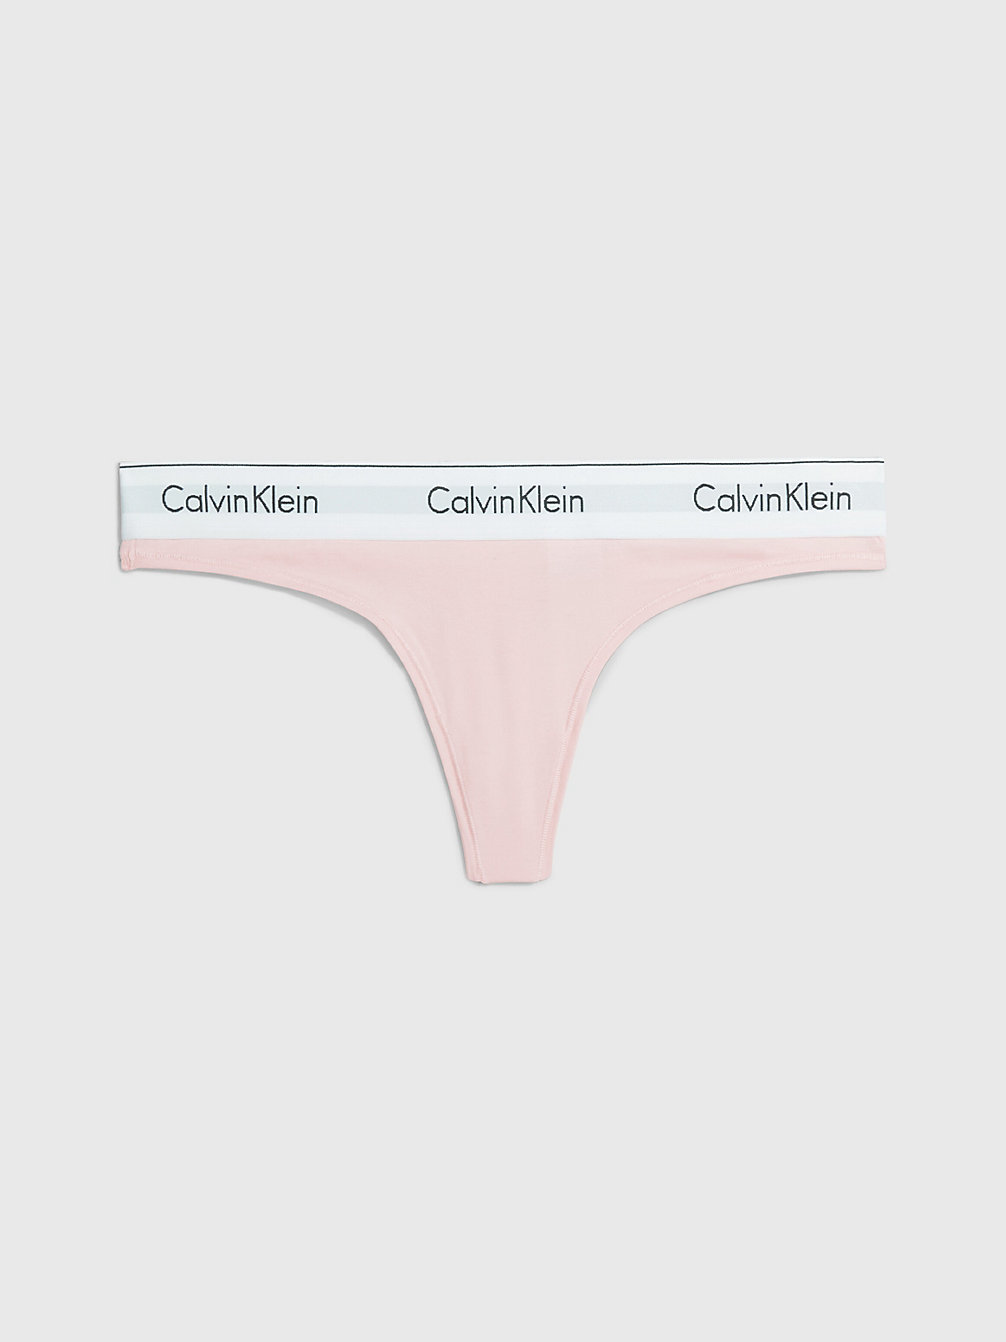 NYMPHS THIGH > Стринги - Modern Cotton > undefined Женщины - Calvin Klein